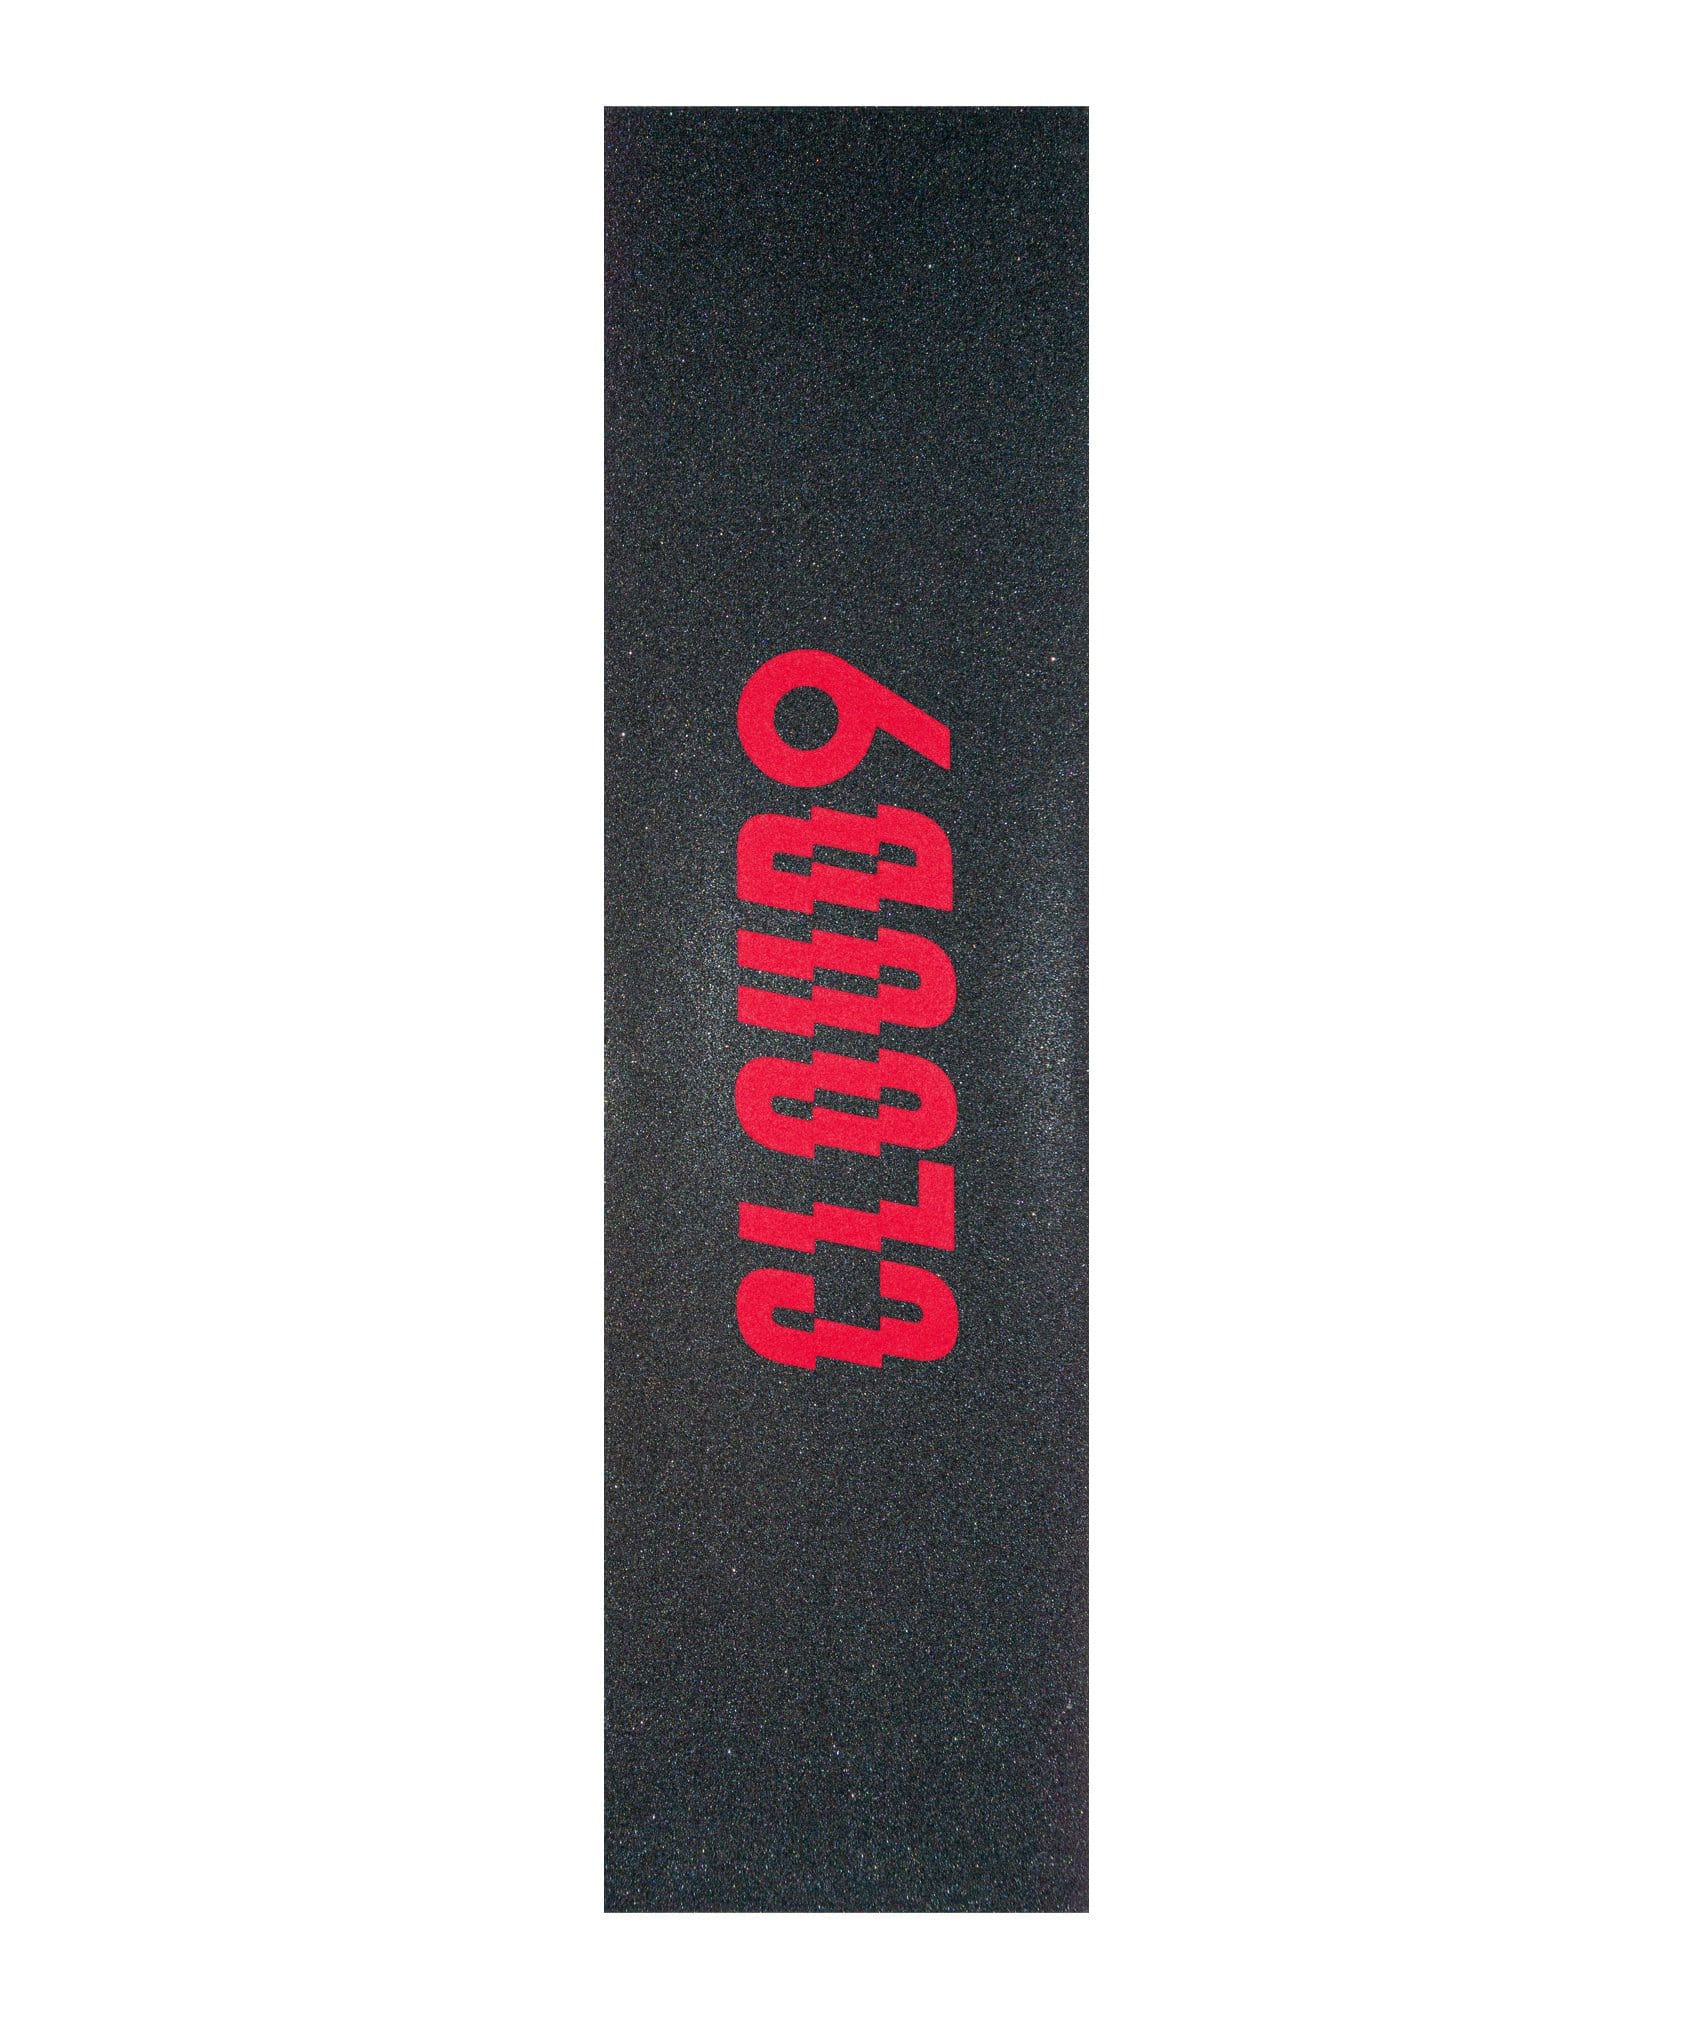 Red Cloud 9 Griptape Logo on Black Skateboard Griptape